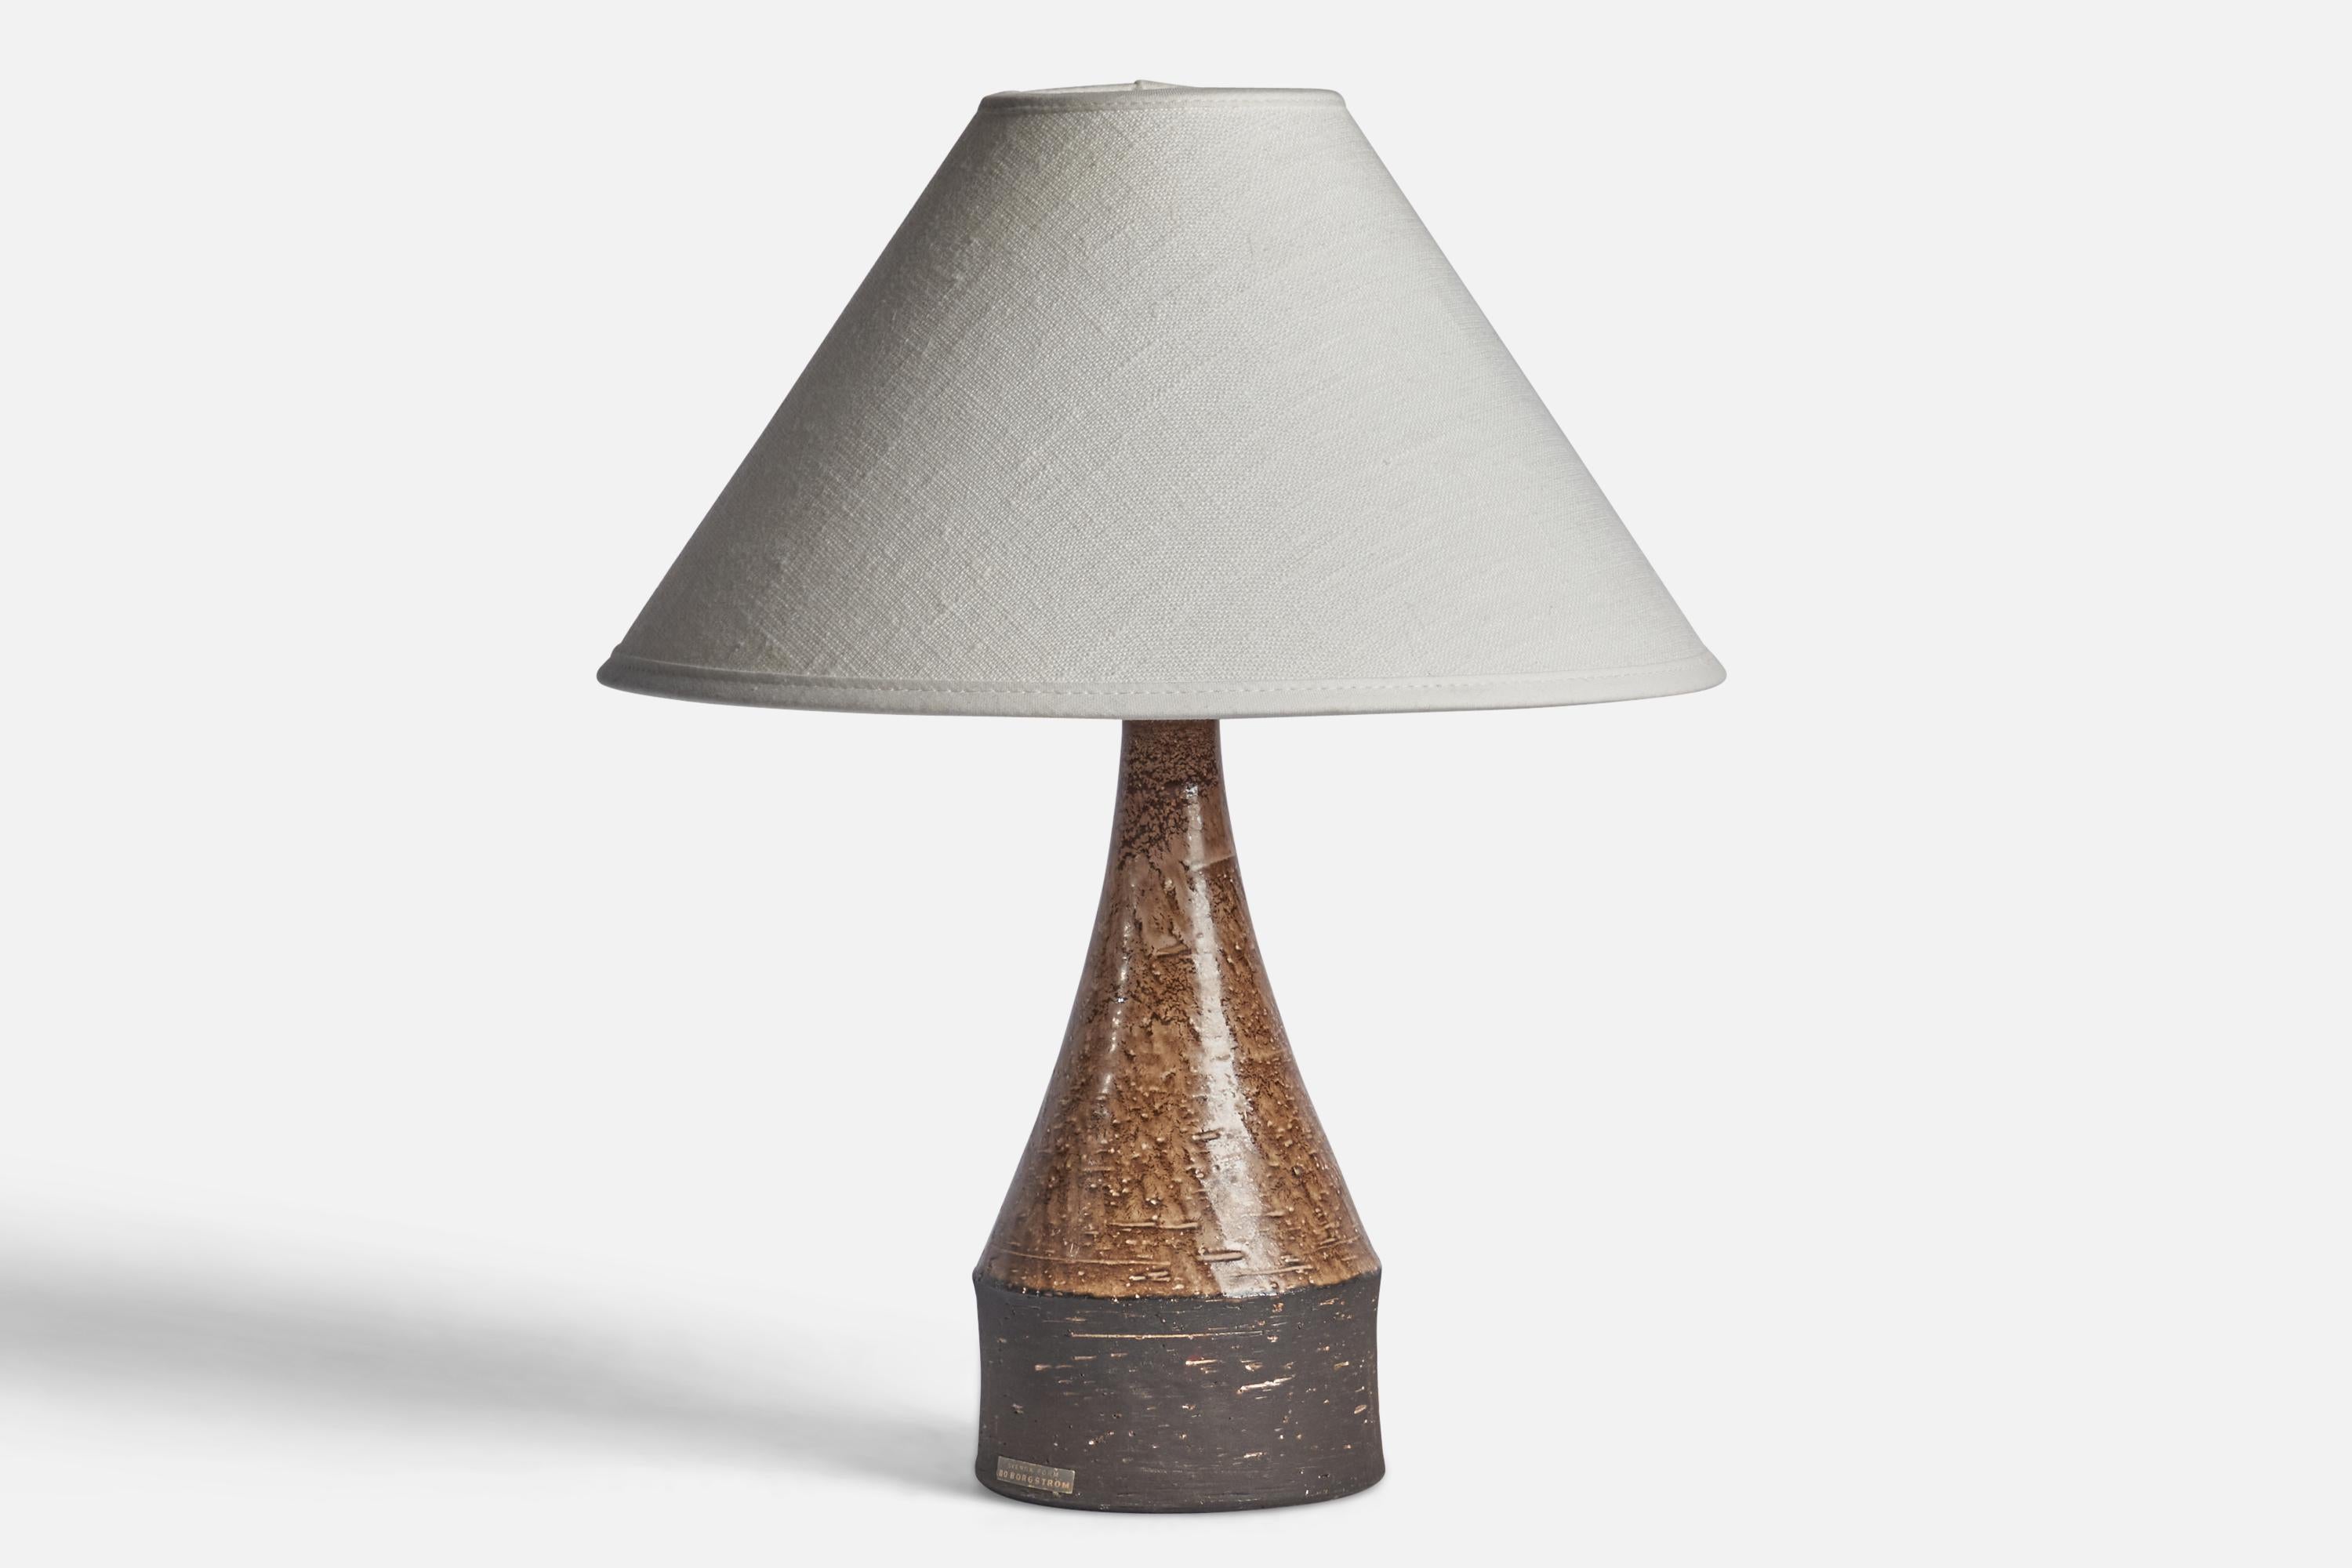 Lampe de table en verre brun, conçue et produite par Bo Borgström, Suède, années 1960.

Dimensions de la lampe (pouces) : 9.25